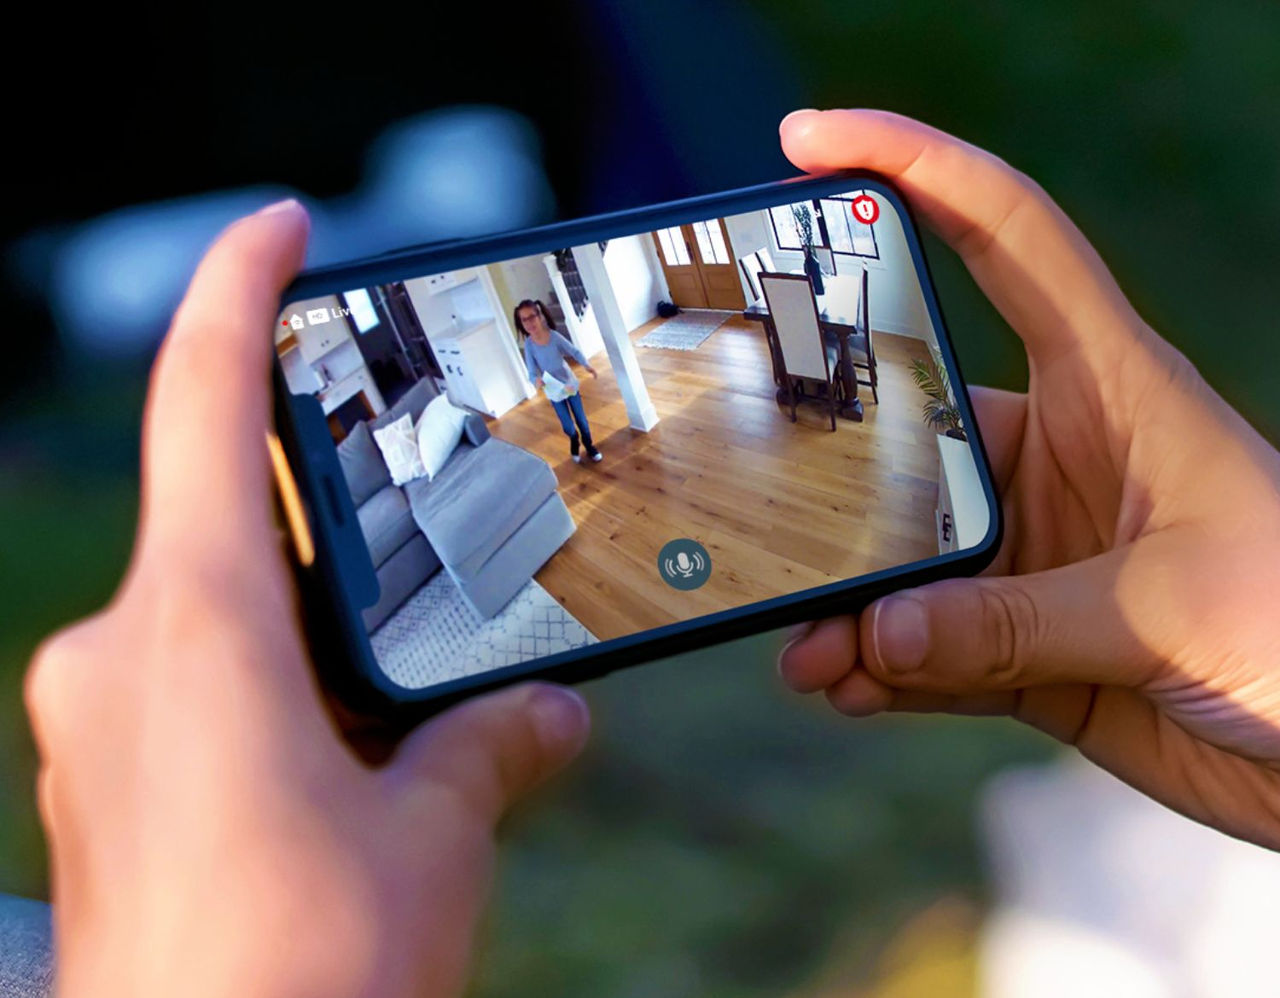 La vidéo de la caméra de sécurité intérieure vue sur un Smartphone avec la vue sur un enfant dans une maison